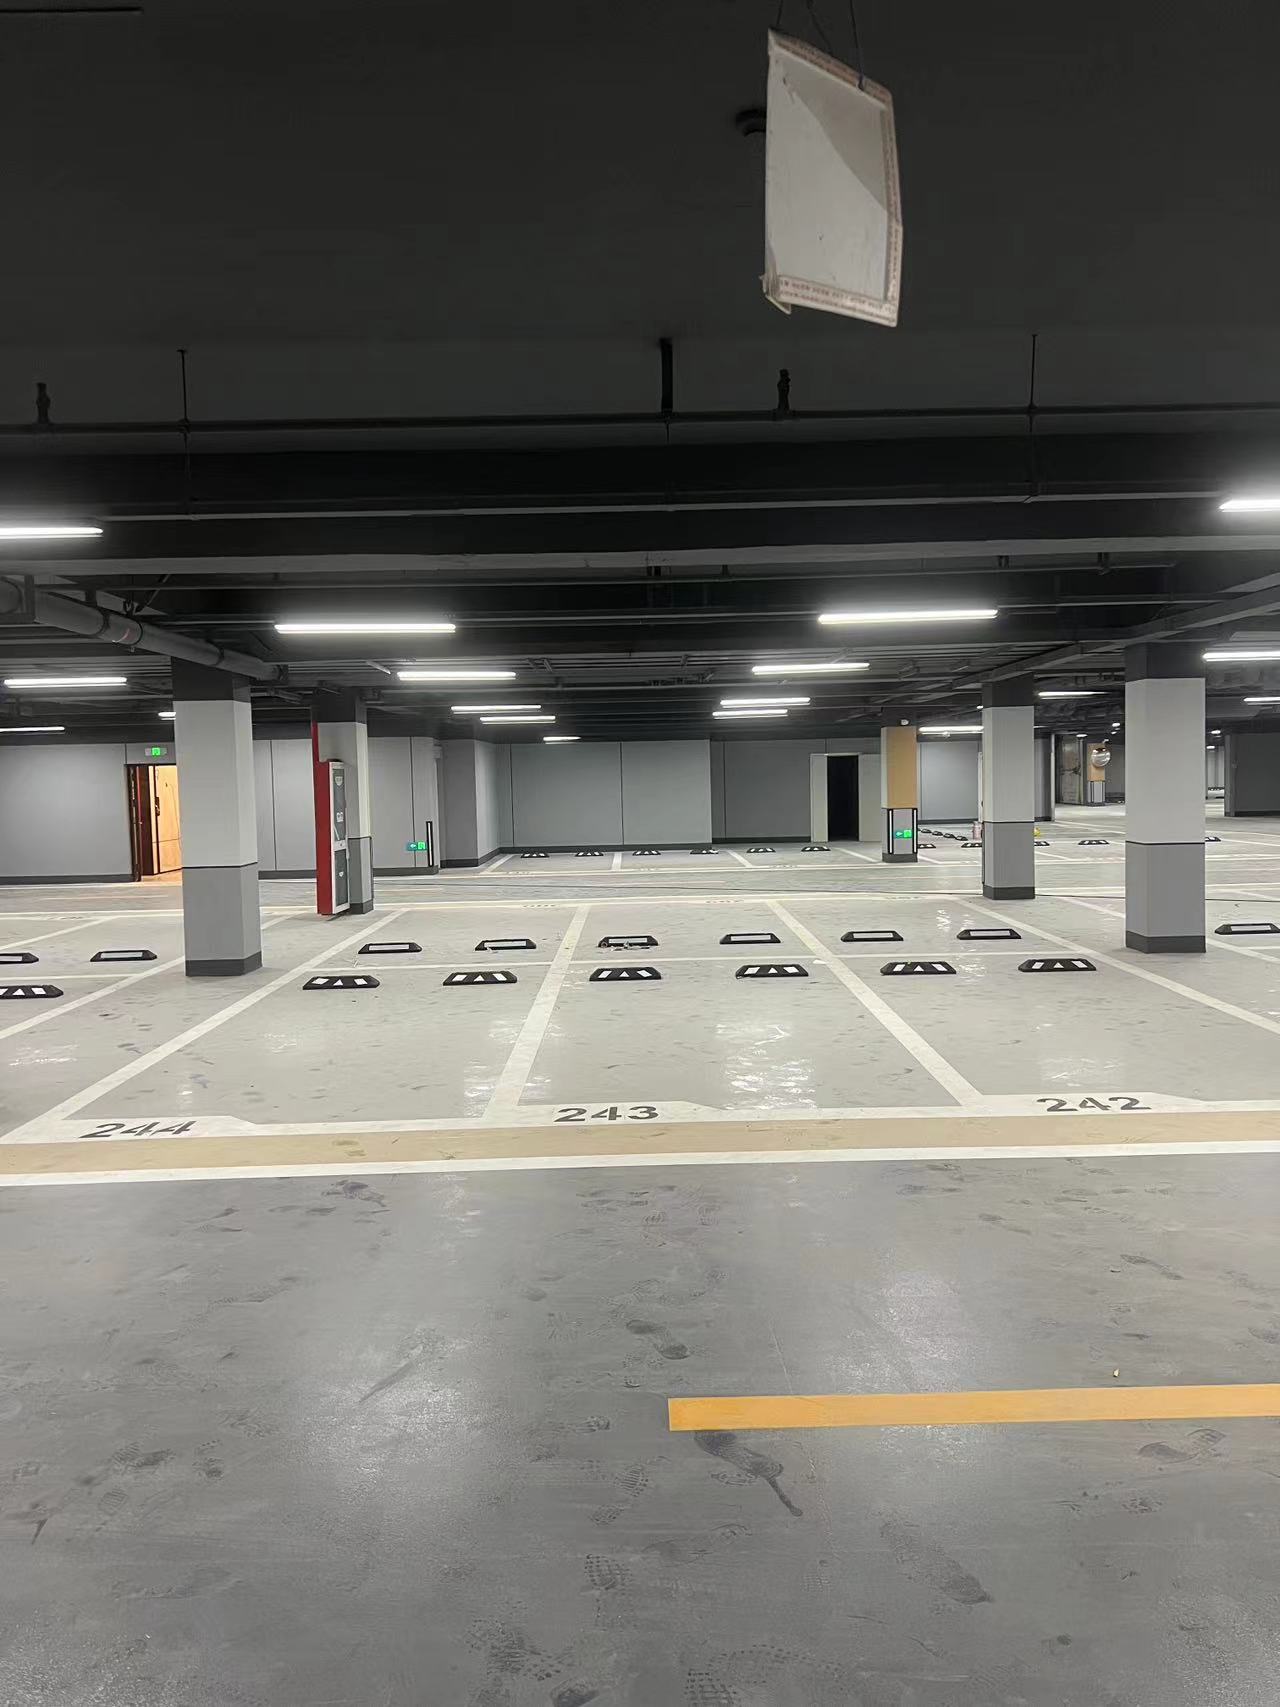 （南京目赏交通）南京道路划线-地下停车场划线、停车位划线